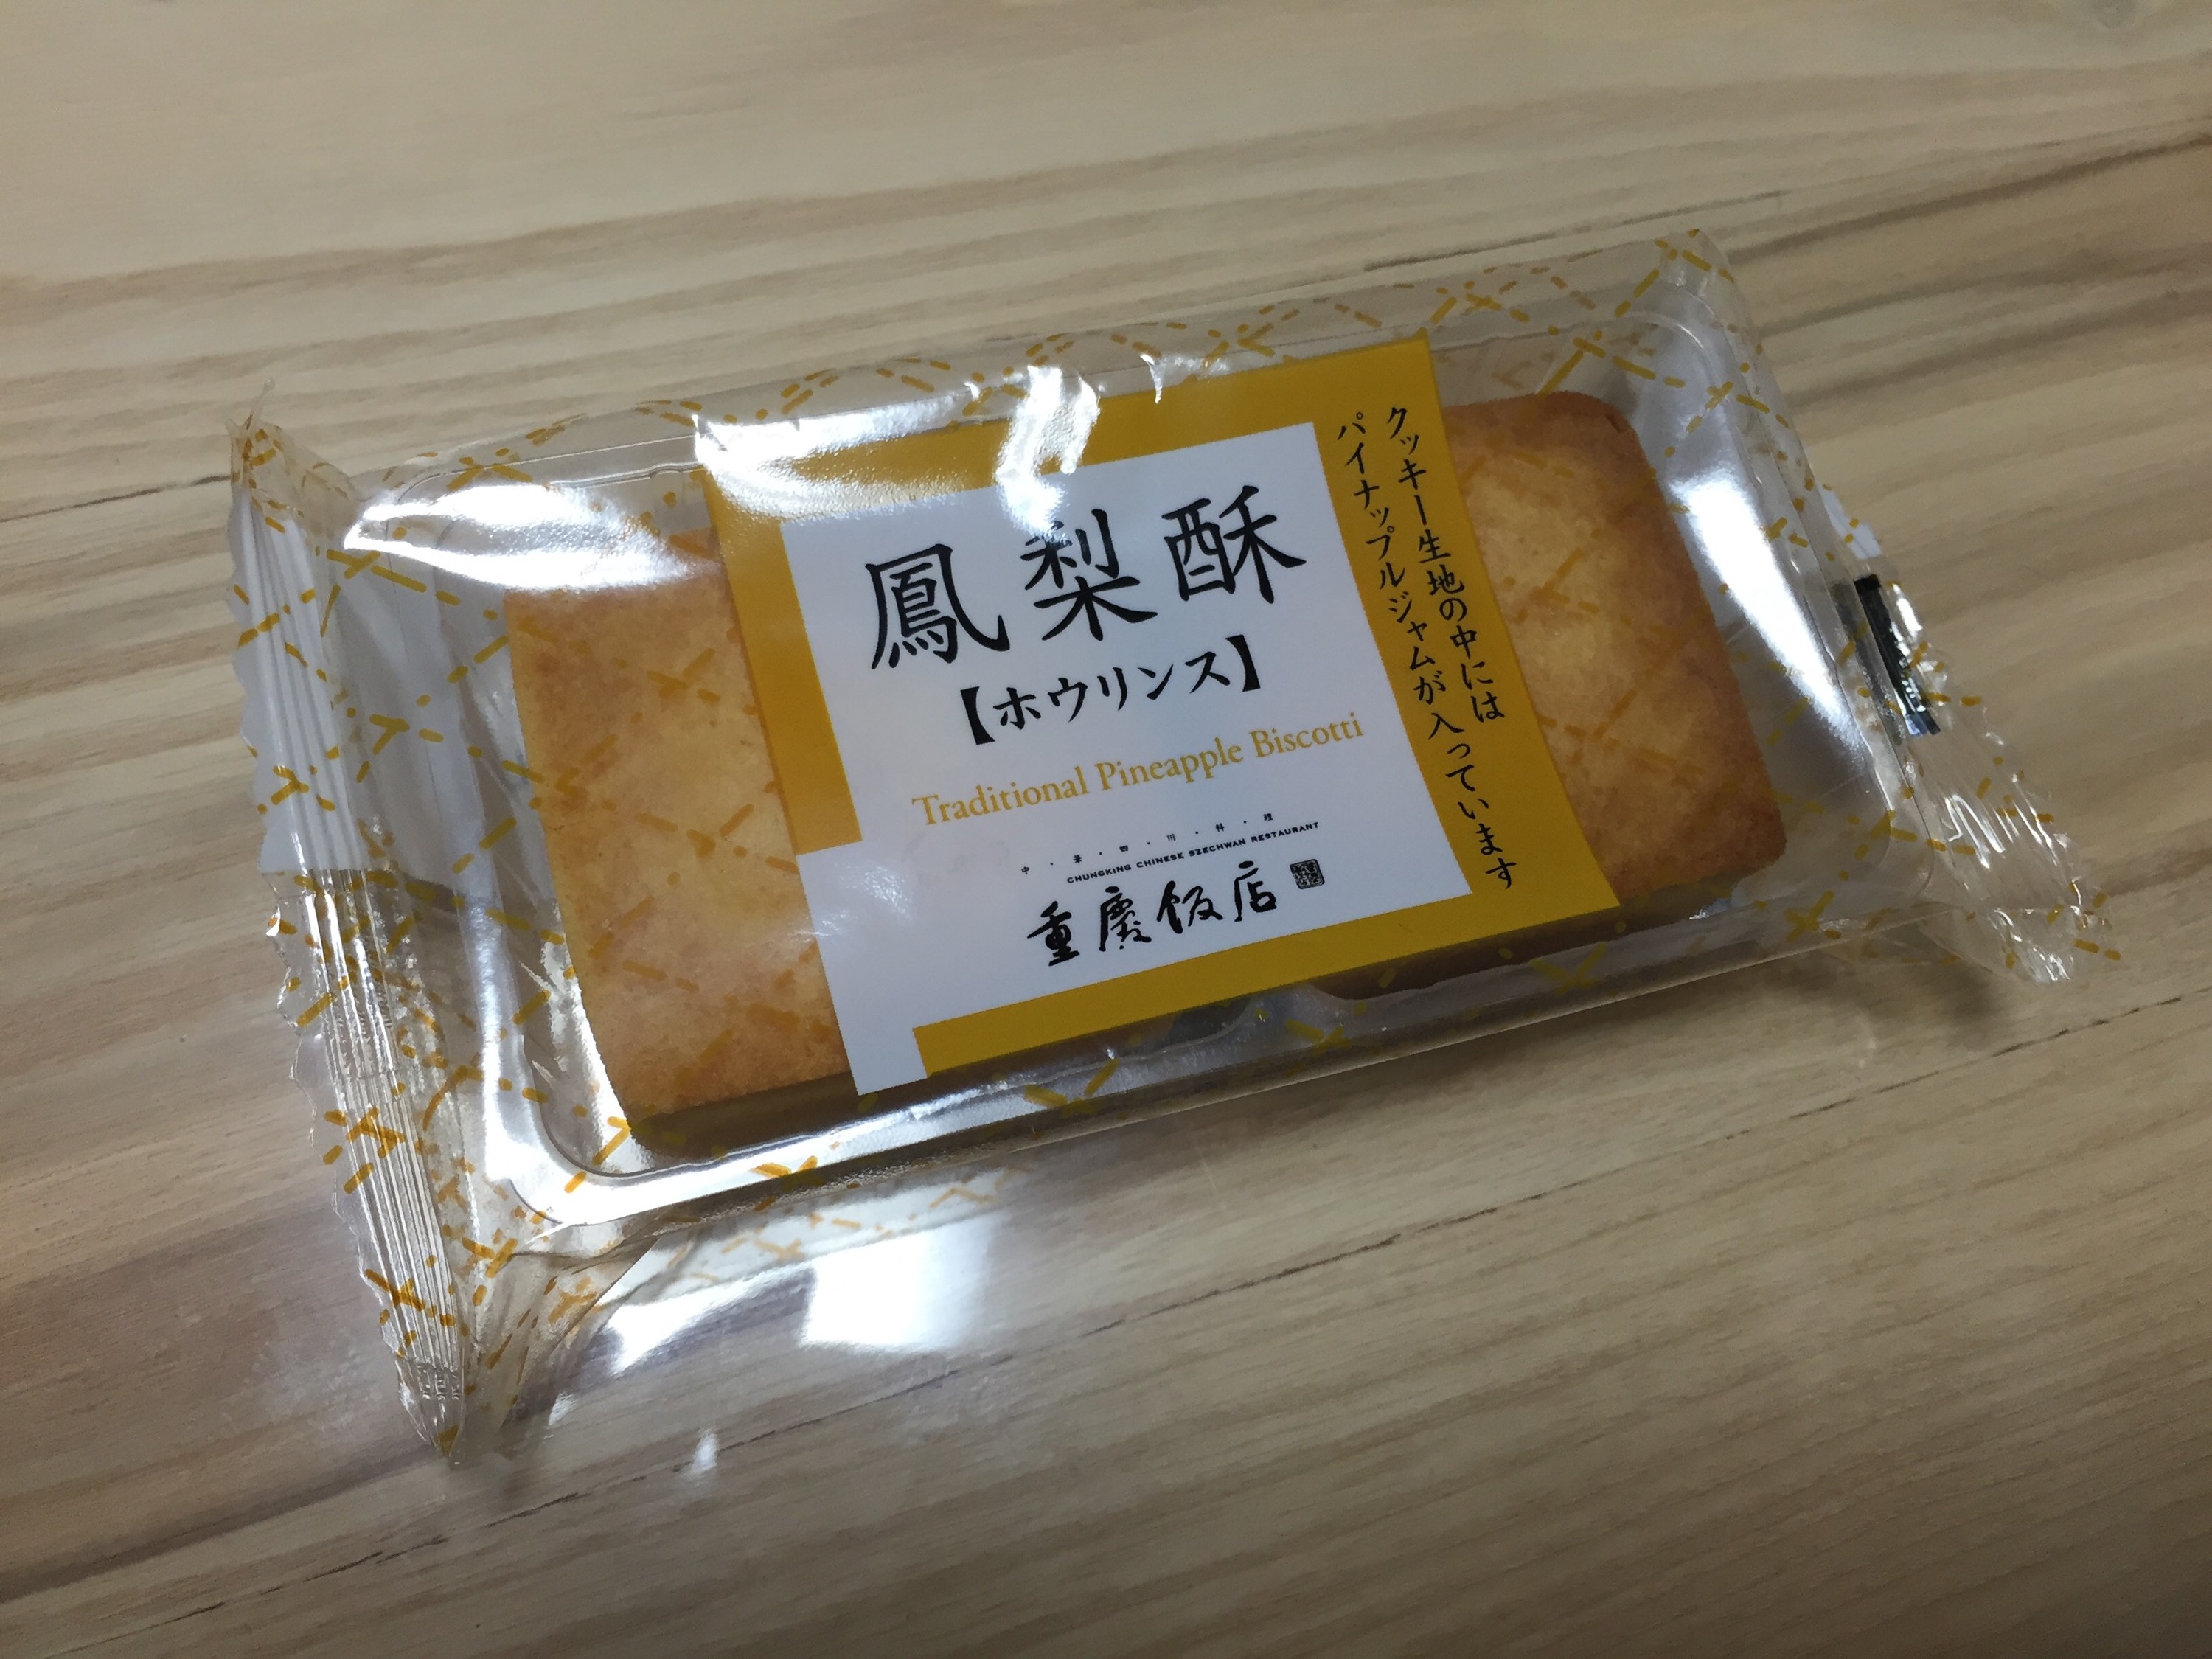 中華街のパイナップルケーキ食べ比べ 台湾ラボ